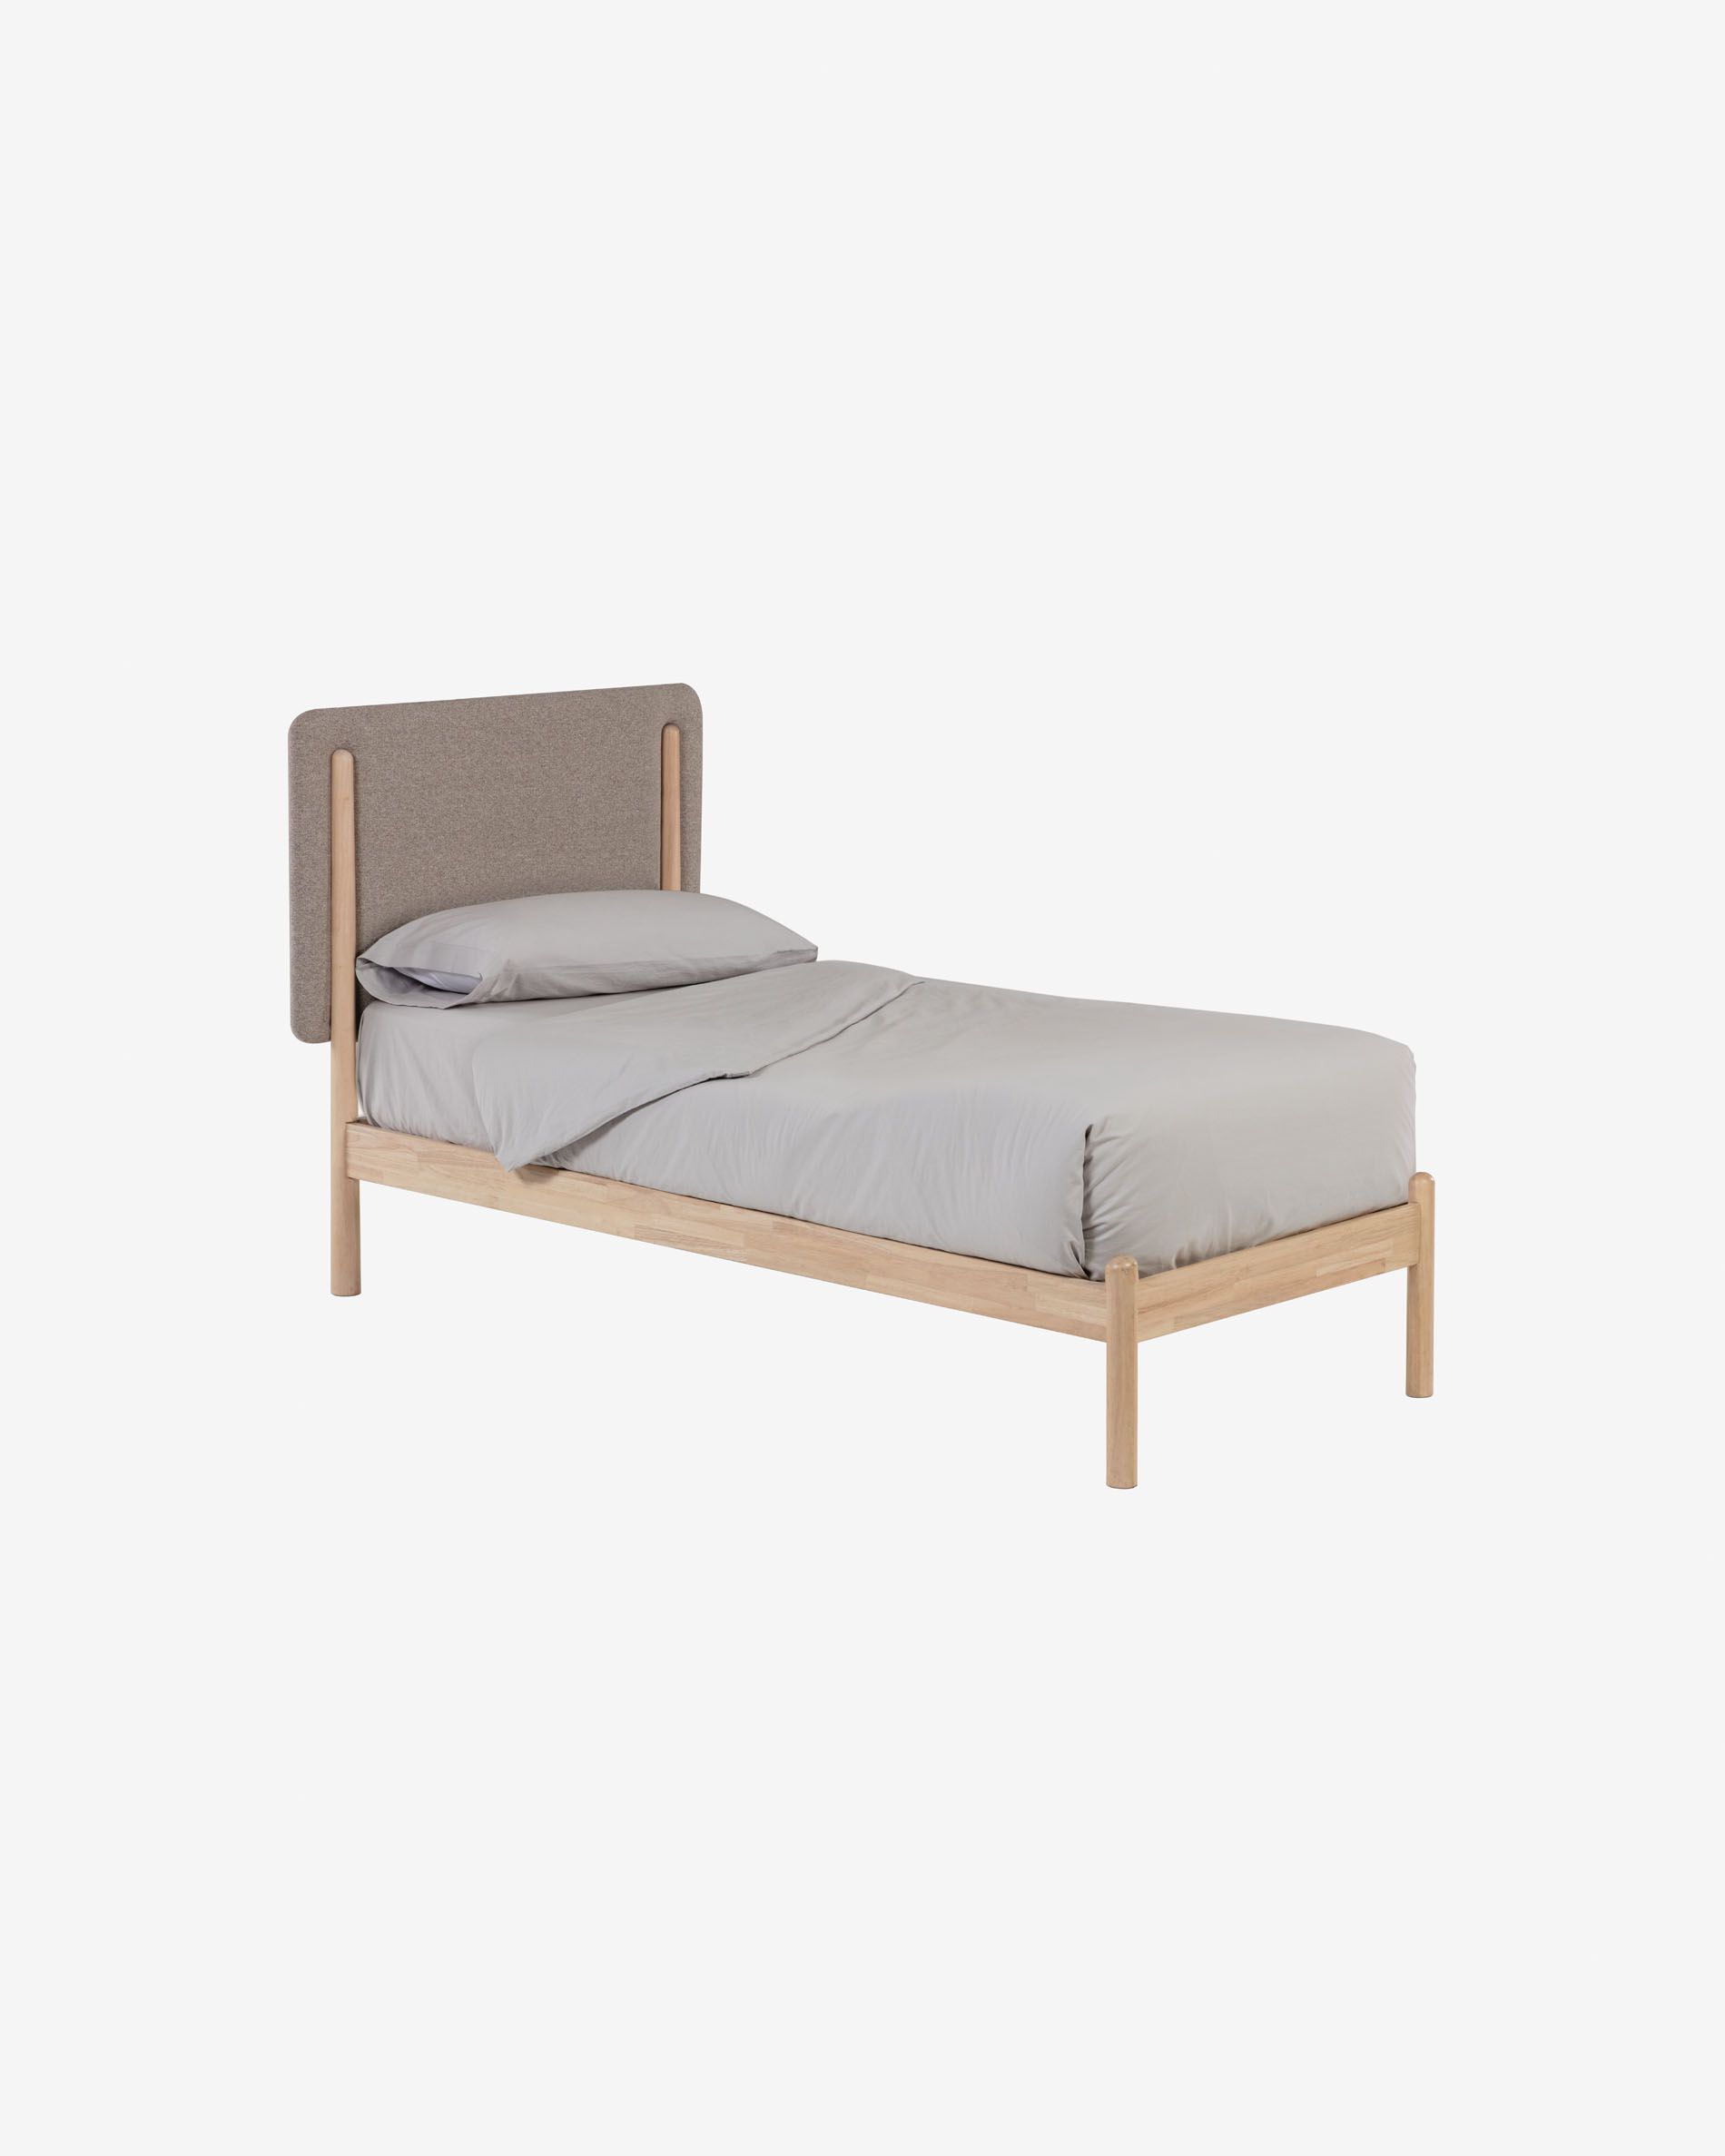 Het bed heeft een dankzij de ronde vormen en zachte materialen een rustige en neutrale uitstraling.